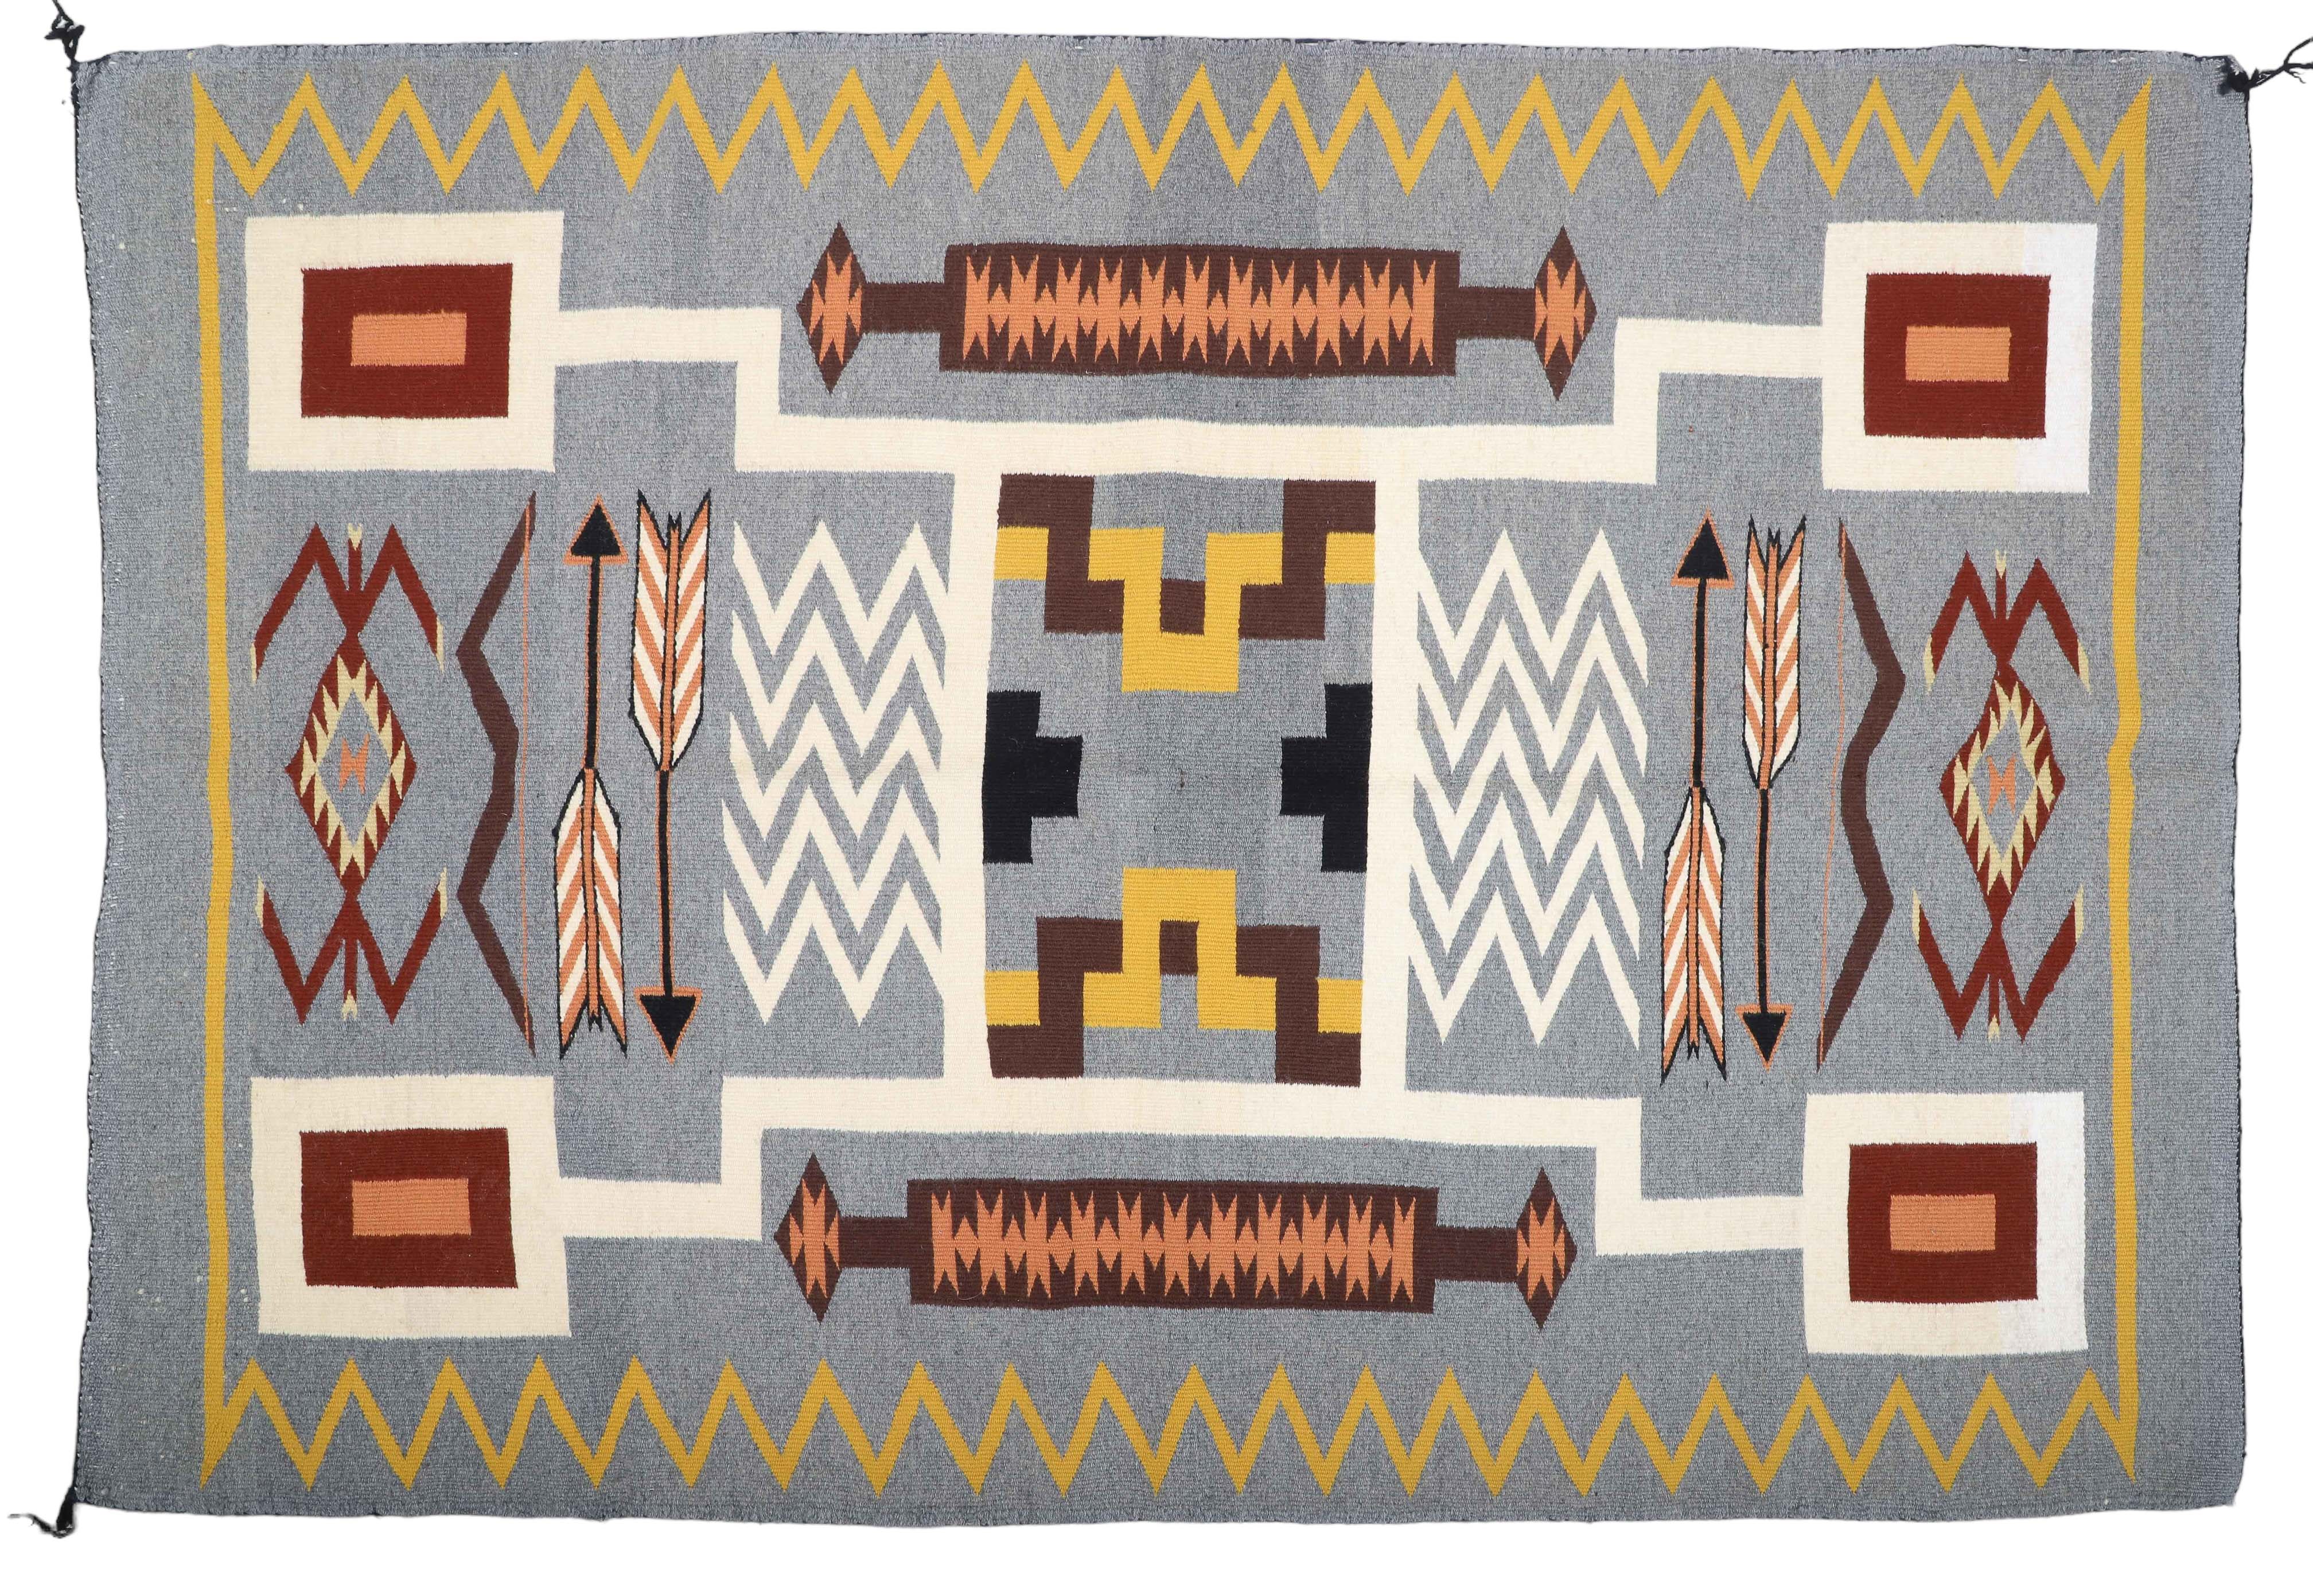 Navajo storm pattern weaving, woven